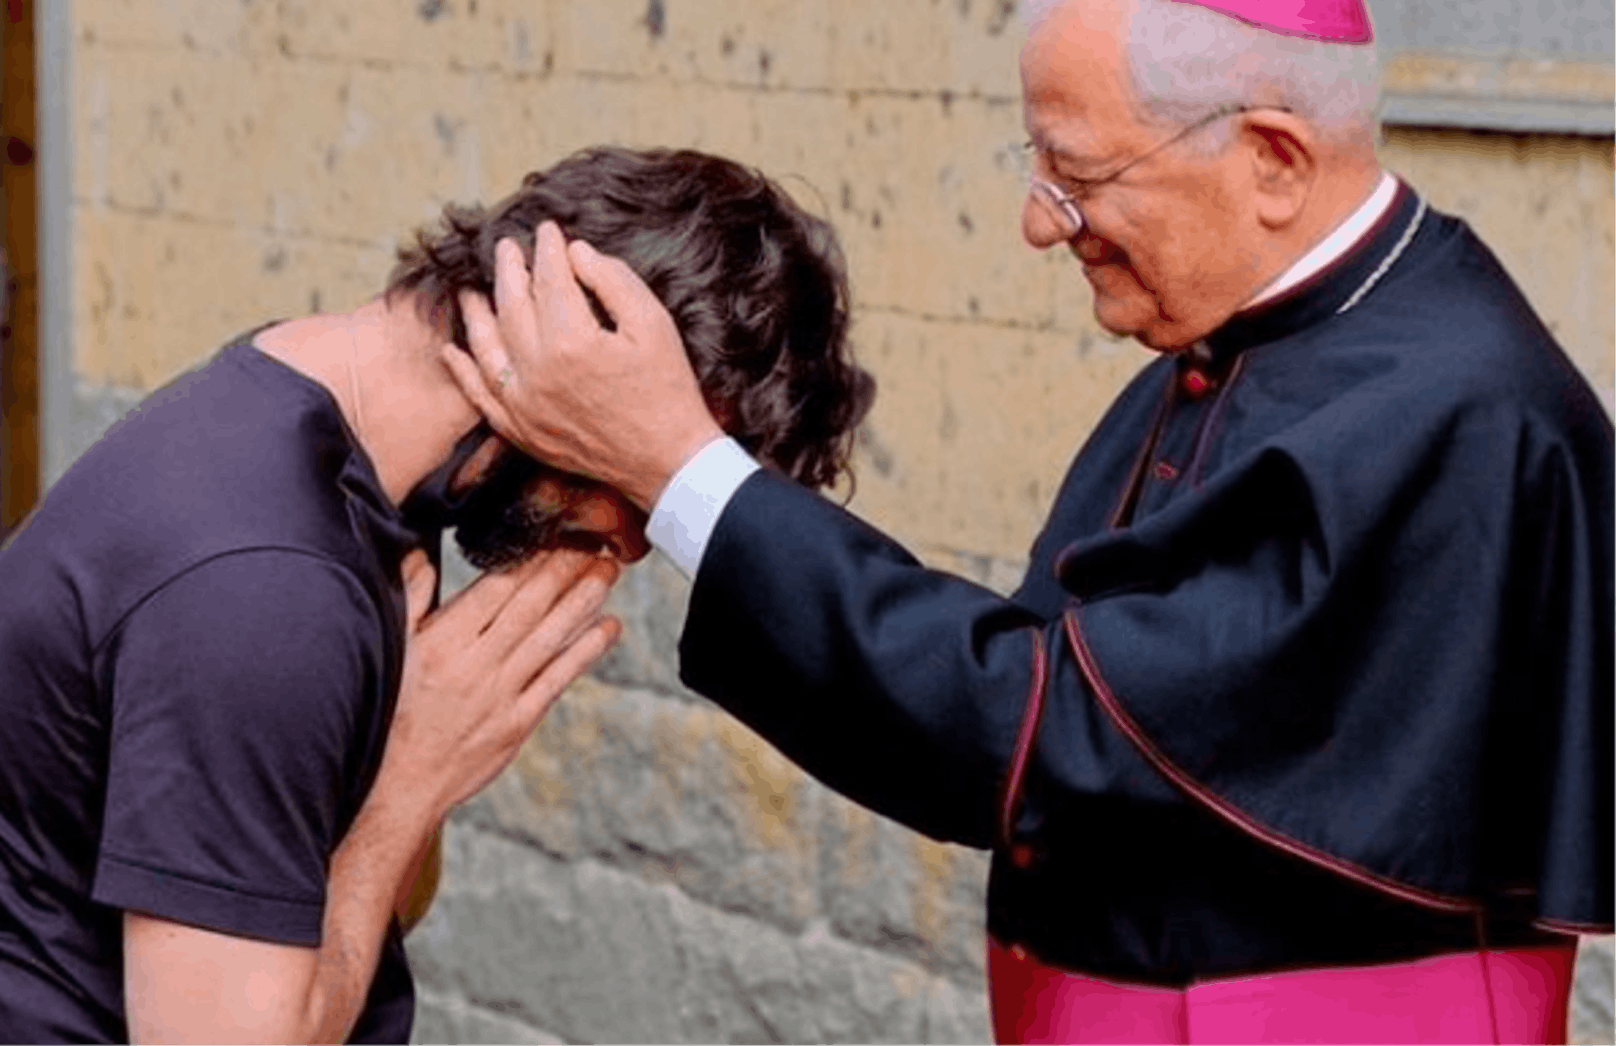 Der Priester Riccardo Ceccobelli gestand seiner Gemeinde von der Liebe zu einer Frau.